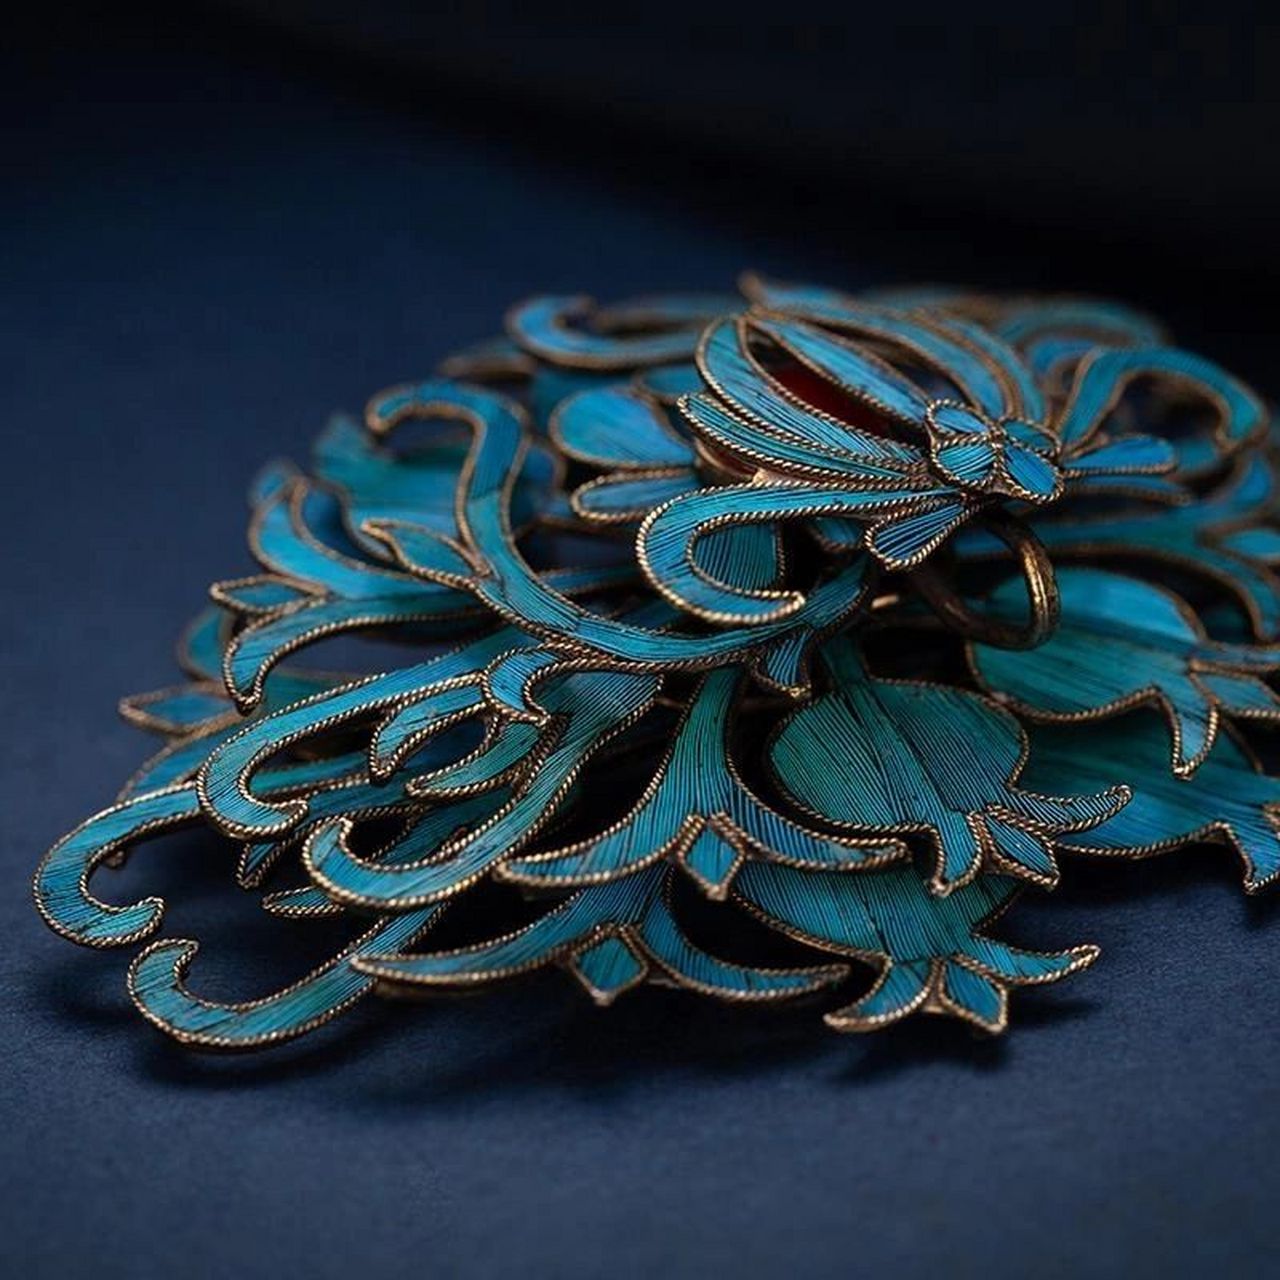 分享一个非物质文化遗产:点翠 78点翠工艺是一项中国传统的金银首饰